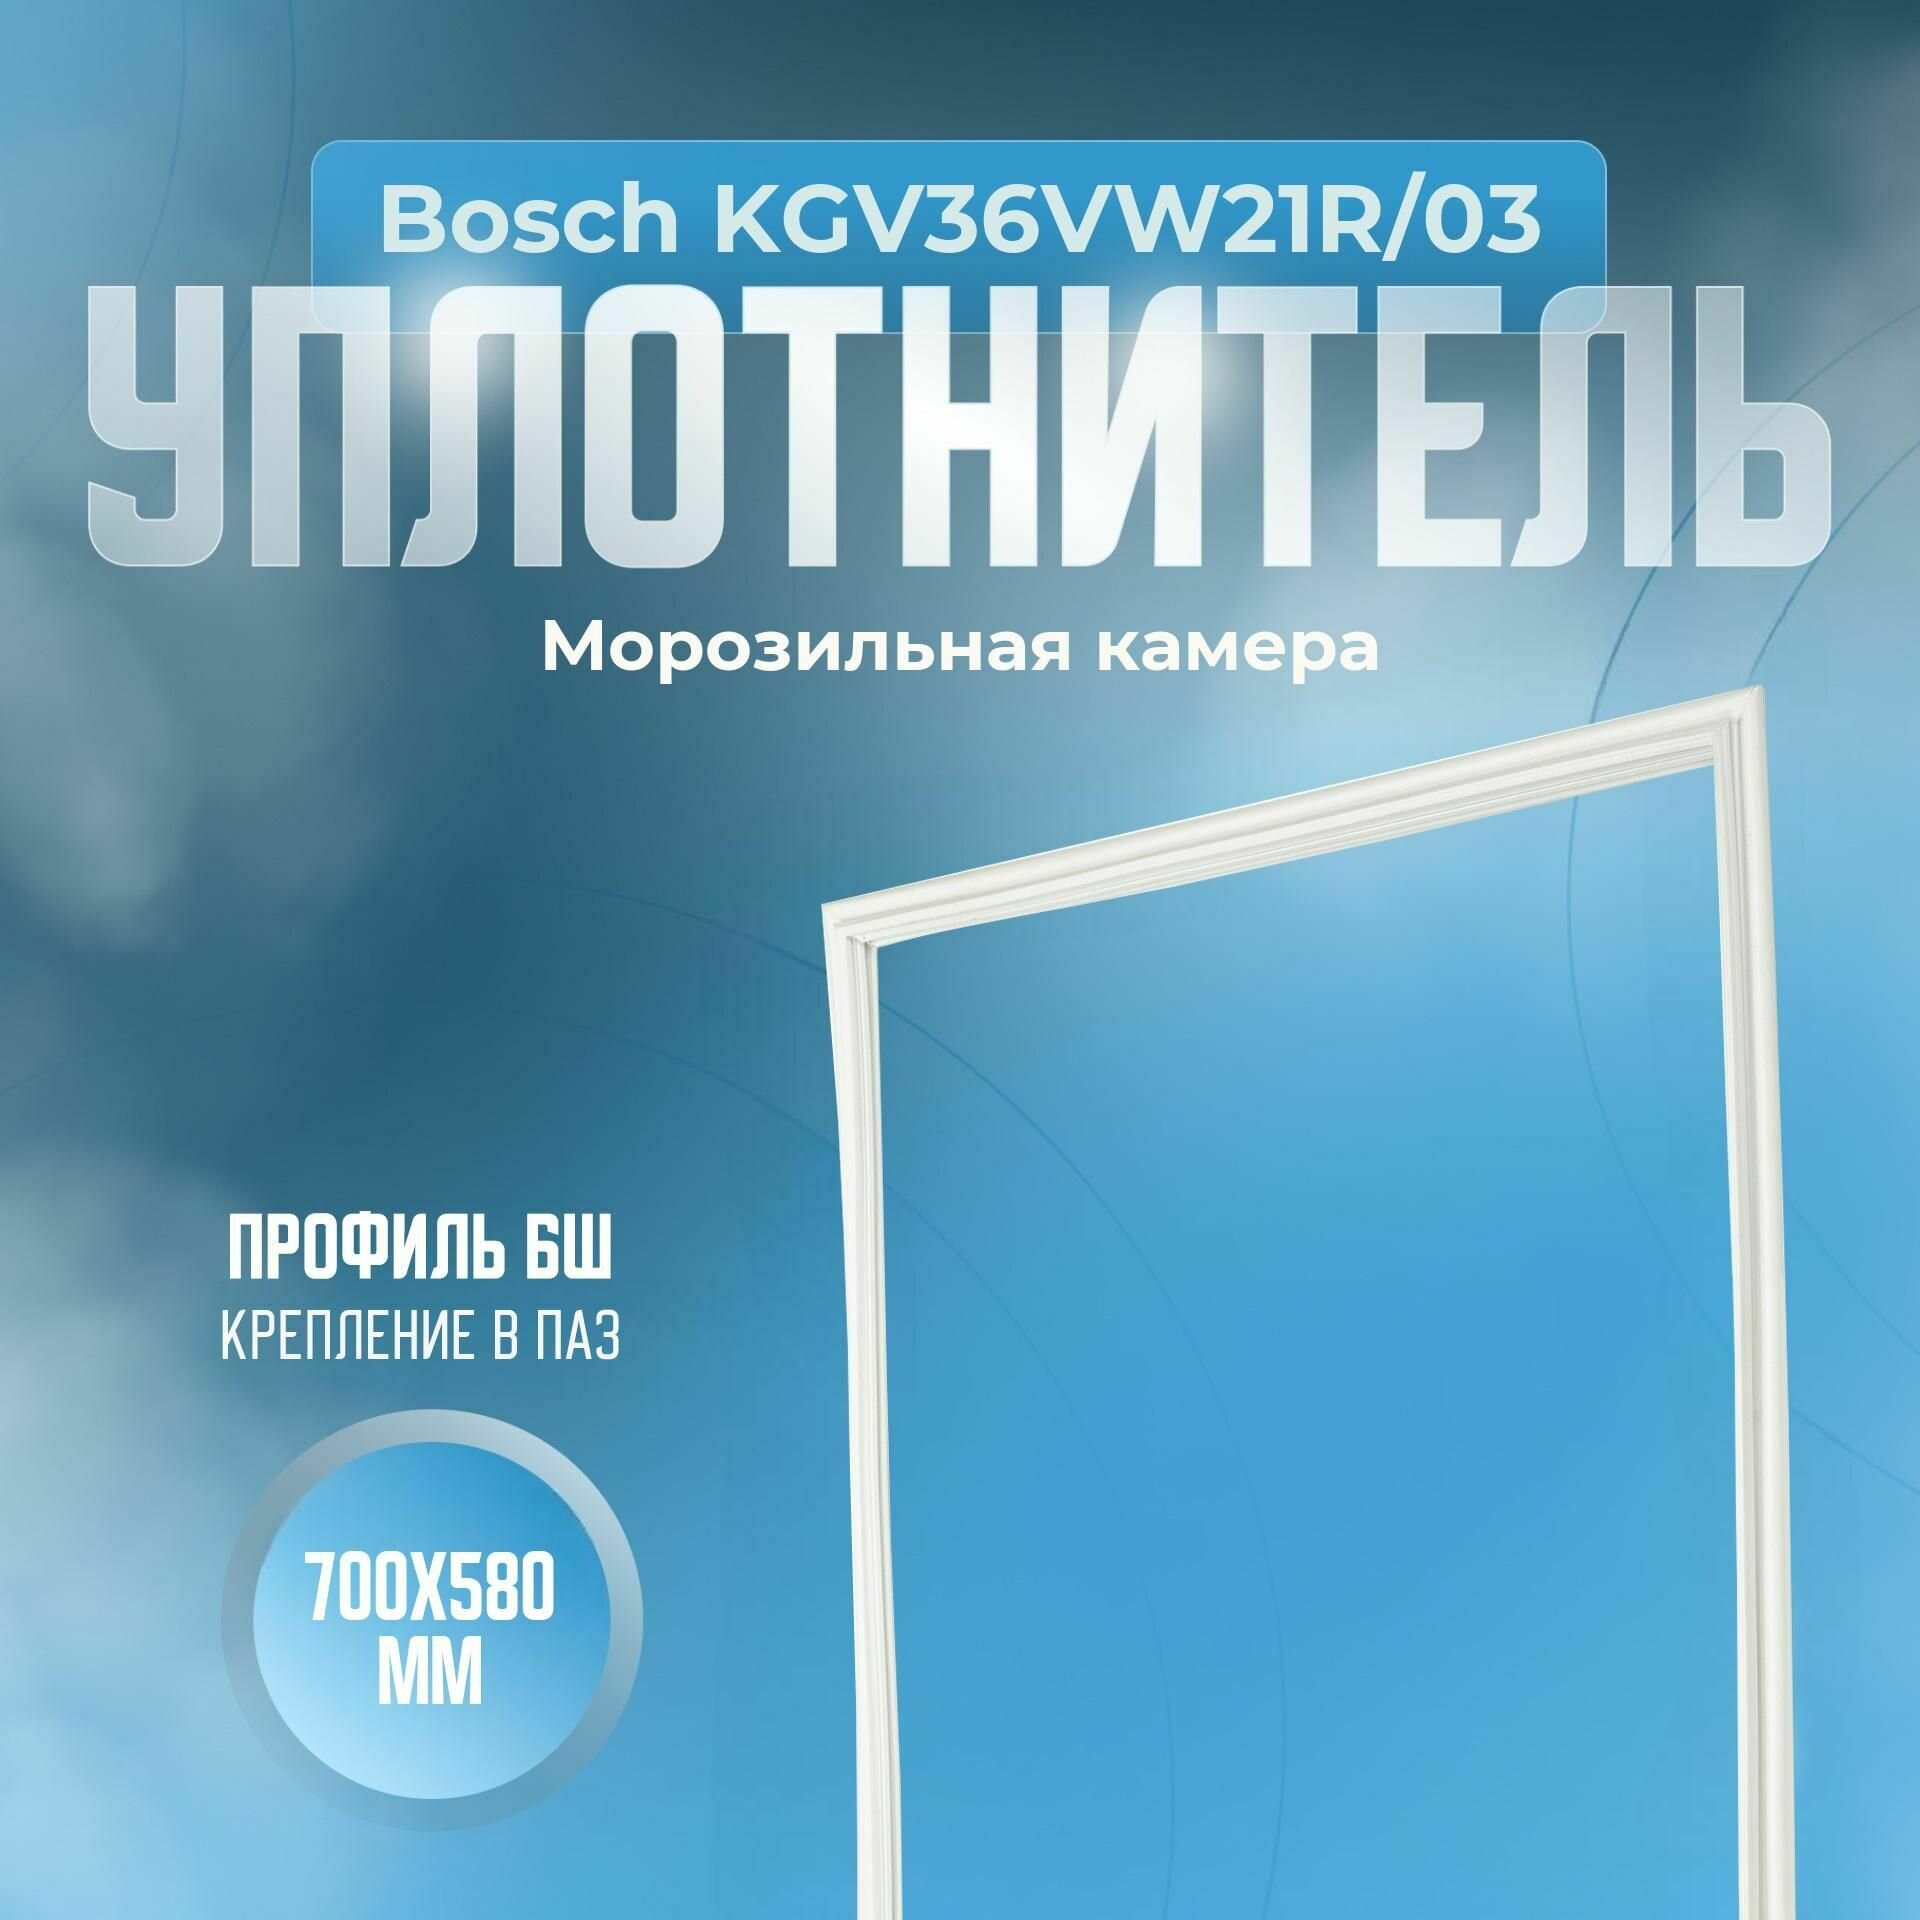 Уплотнитель Bosch KGV36VW21R/03. м. к, Размер - 700х580 мм. БШ